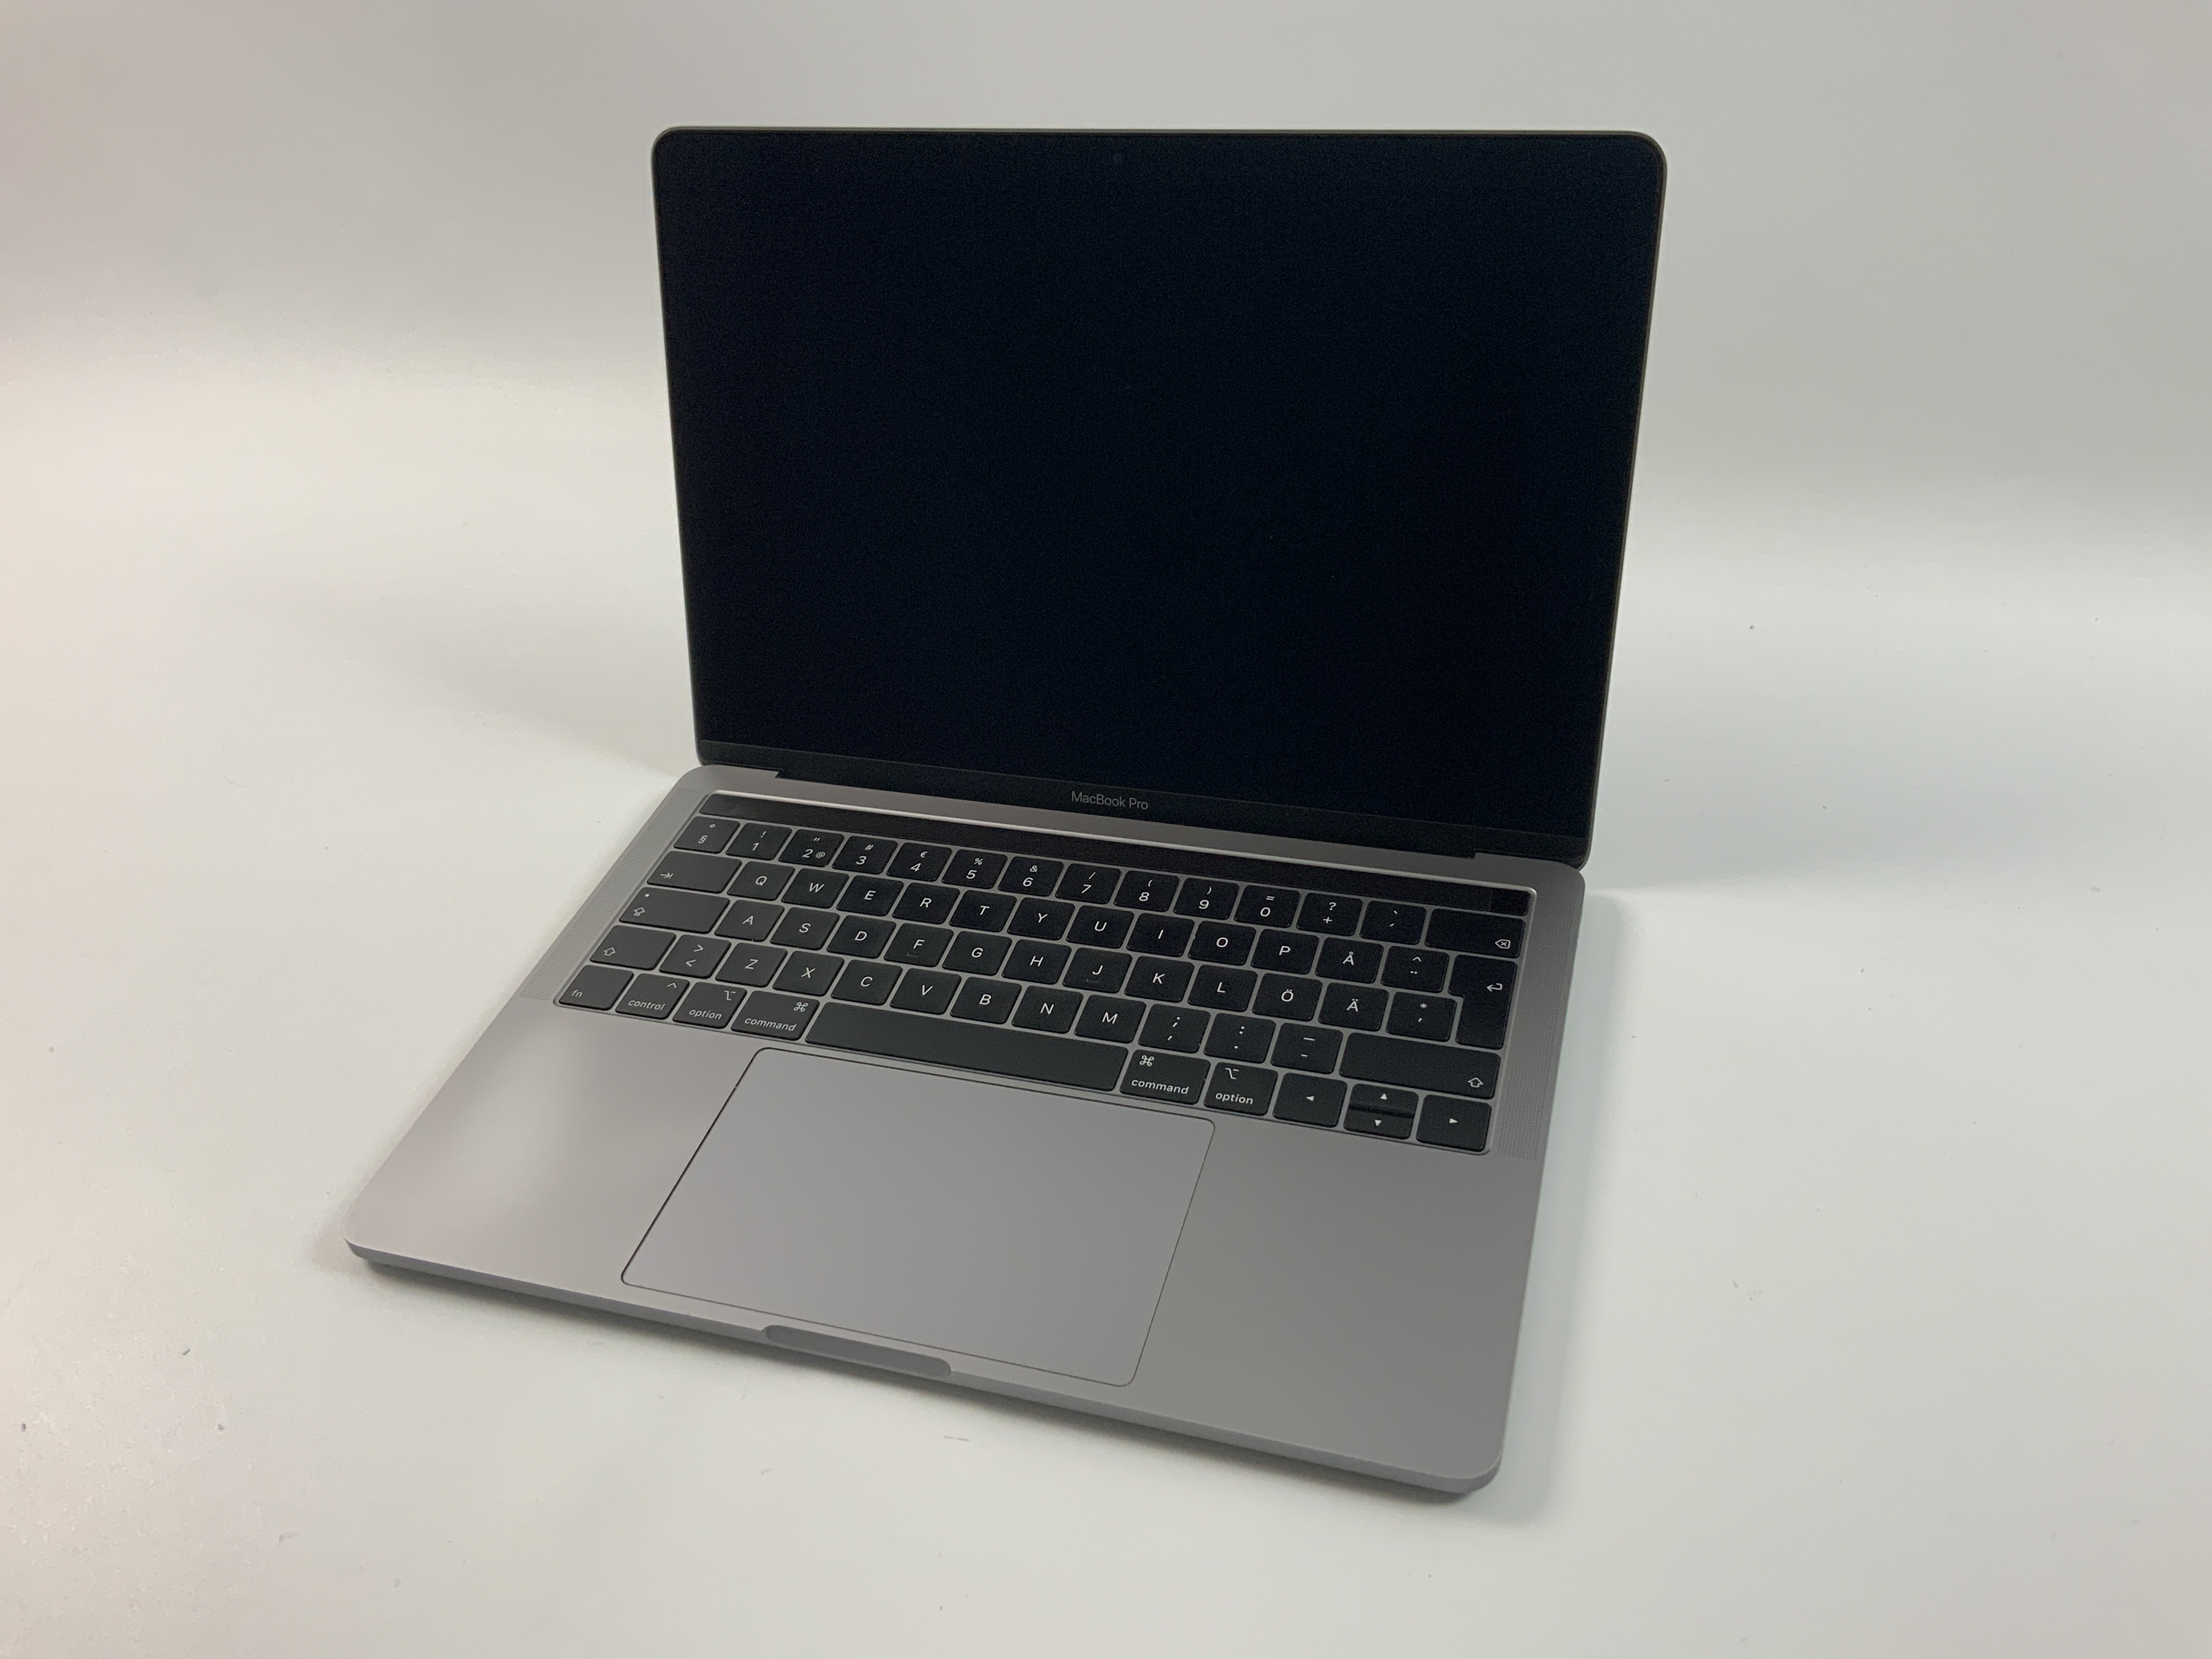 MacBook Pro 13" 4TBT Mid 2019 (Intel Quad-Core i5 2.4 GHz 8 GB RAM 1 TB SSD), Space Gray, Intel Quad-Core i5 2.4 GHz, 8 GB RAM, 1 TB SSD, Kuva 1